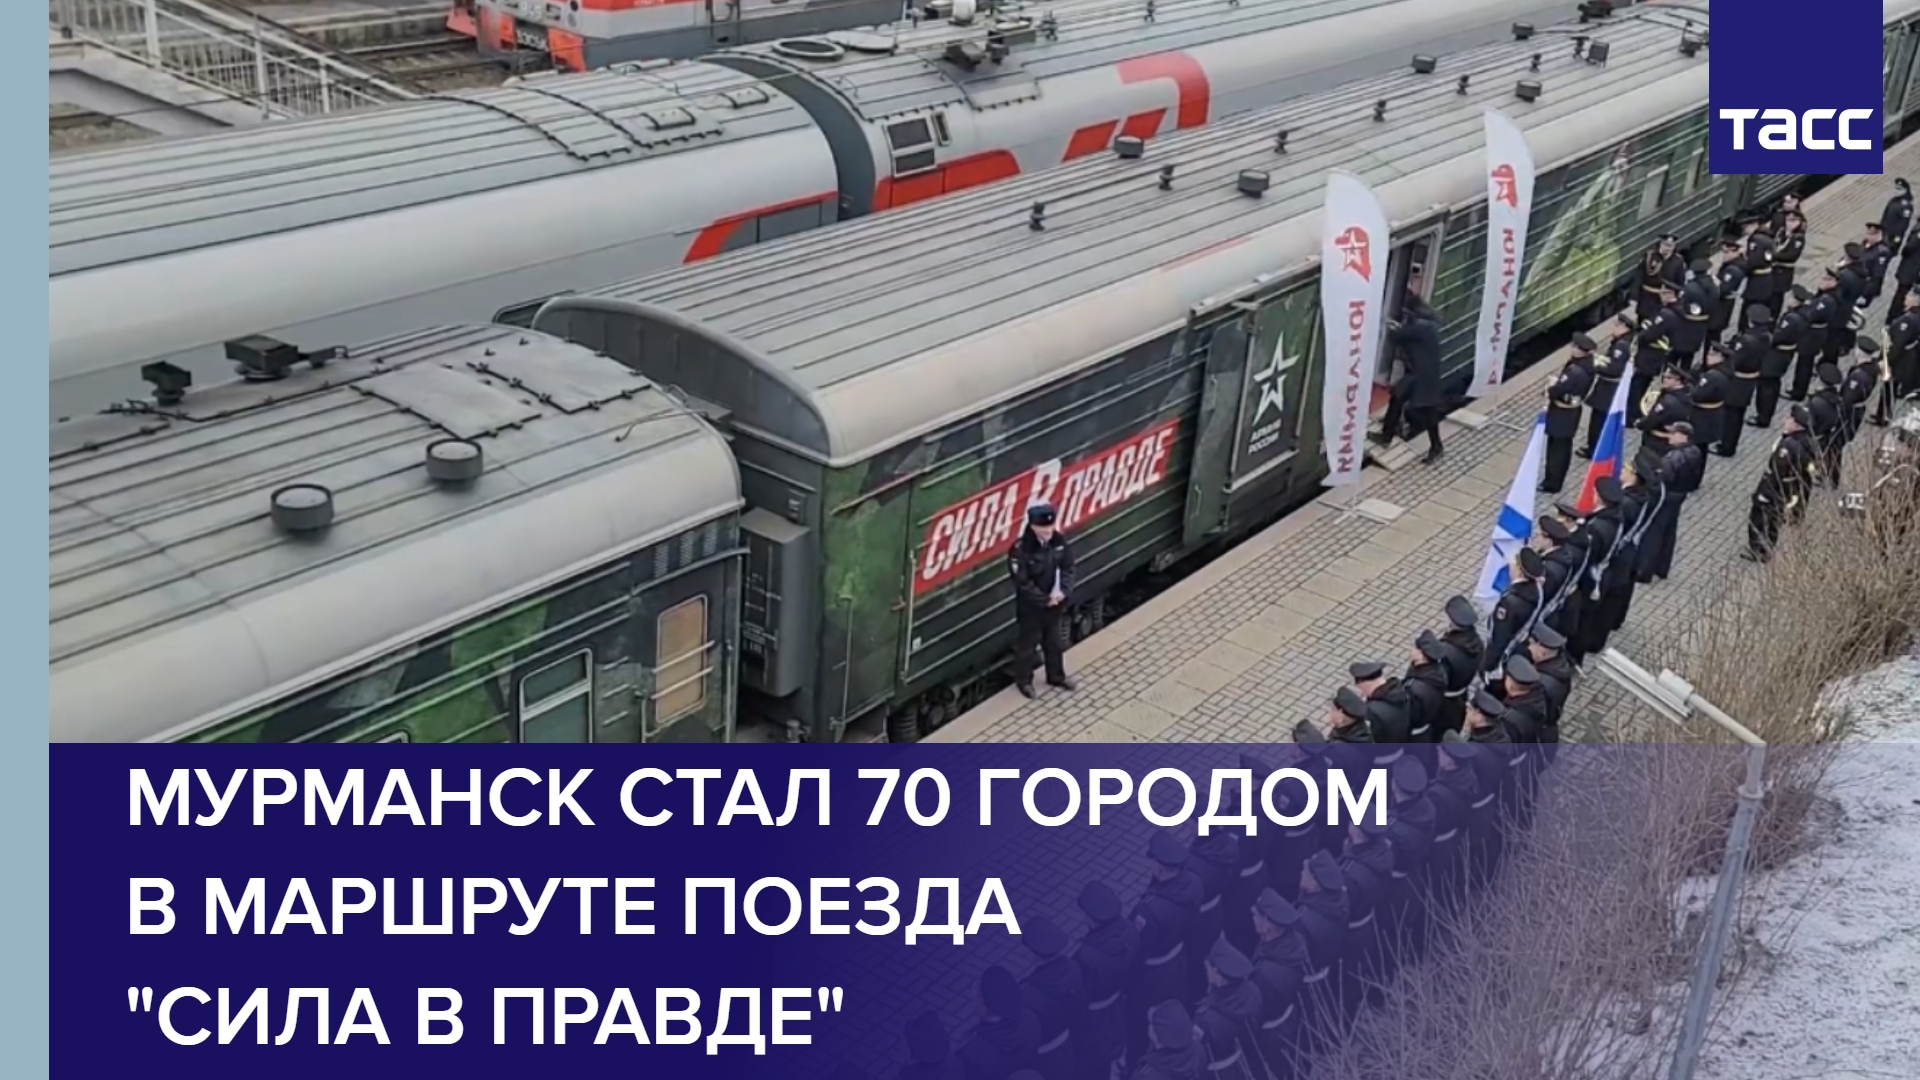 Мурманск стал 70 городом в маршруте поезда "Сила в правде"